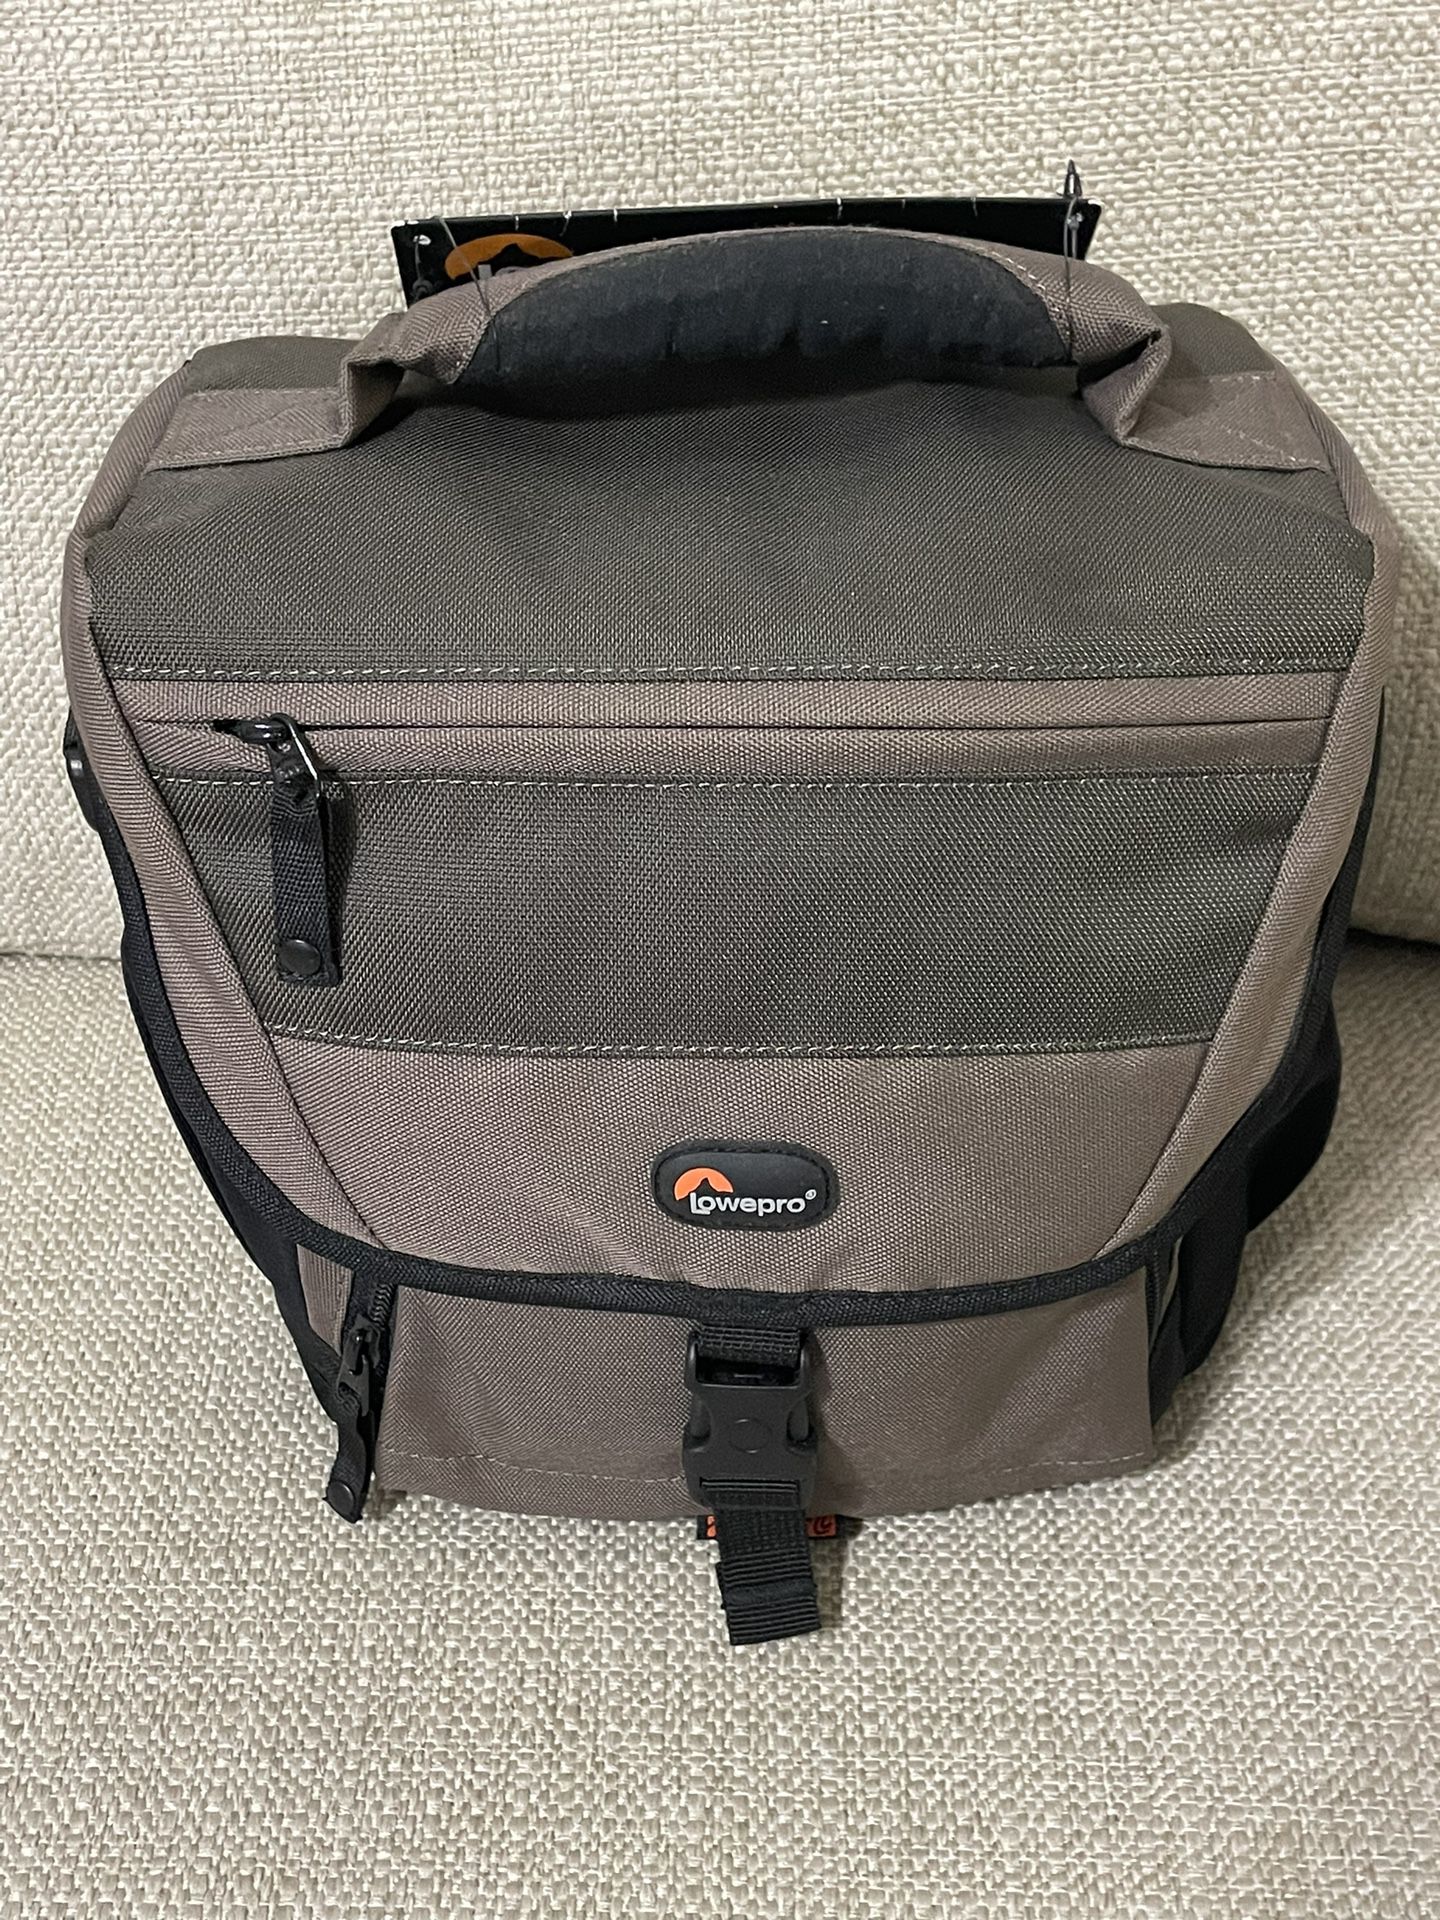 Lowepro Nova 170 AW Shoulder Bag, Camera Bag, Drone Bag